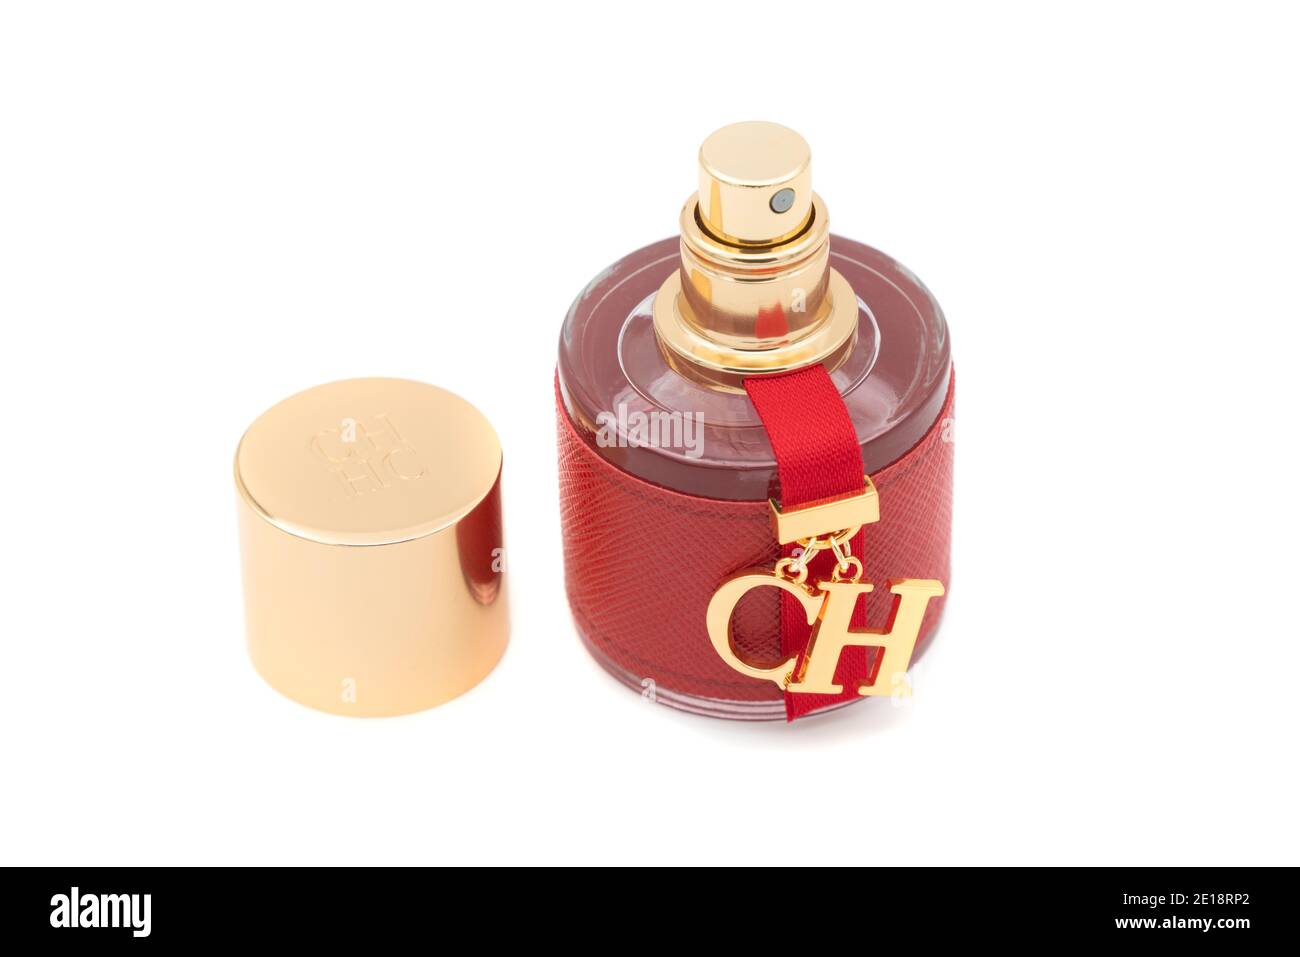 Bouteille de parfum de CH de Carolina Herrera coupée isolée sur fond blanc Banque D'Images